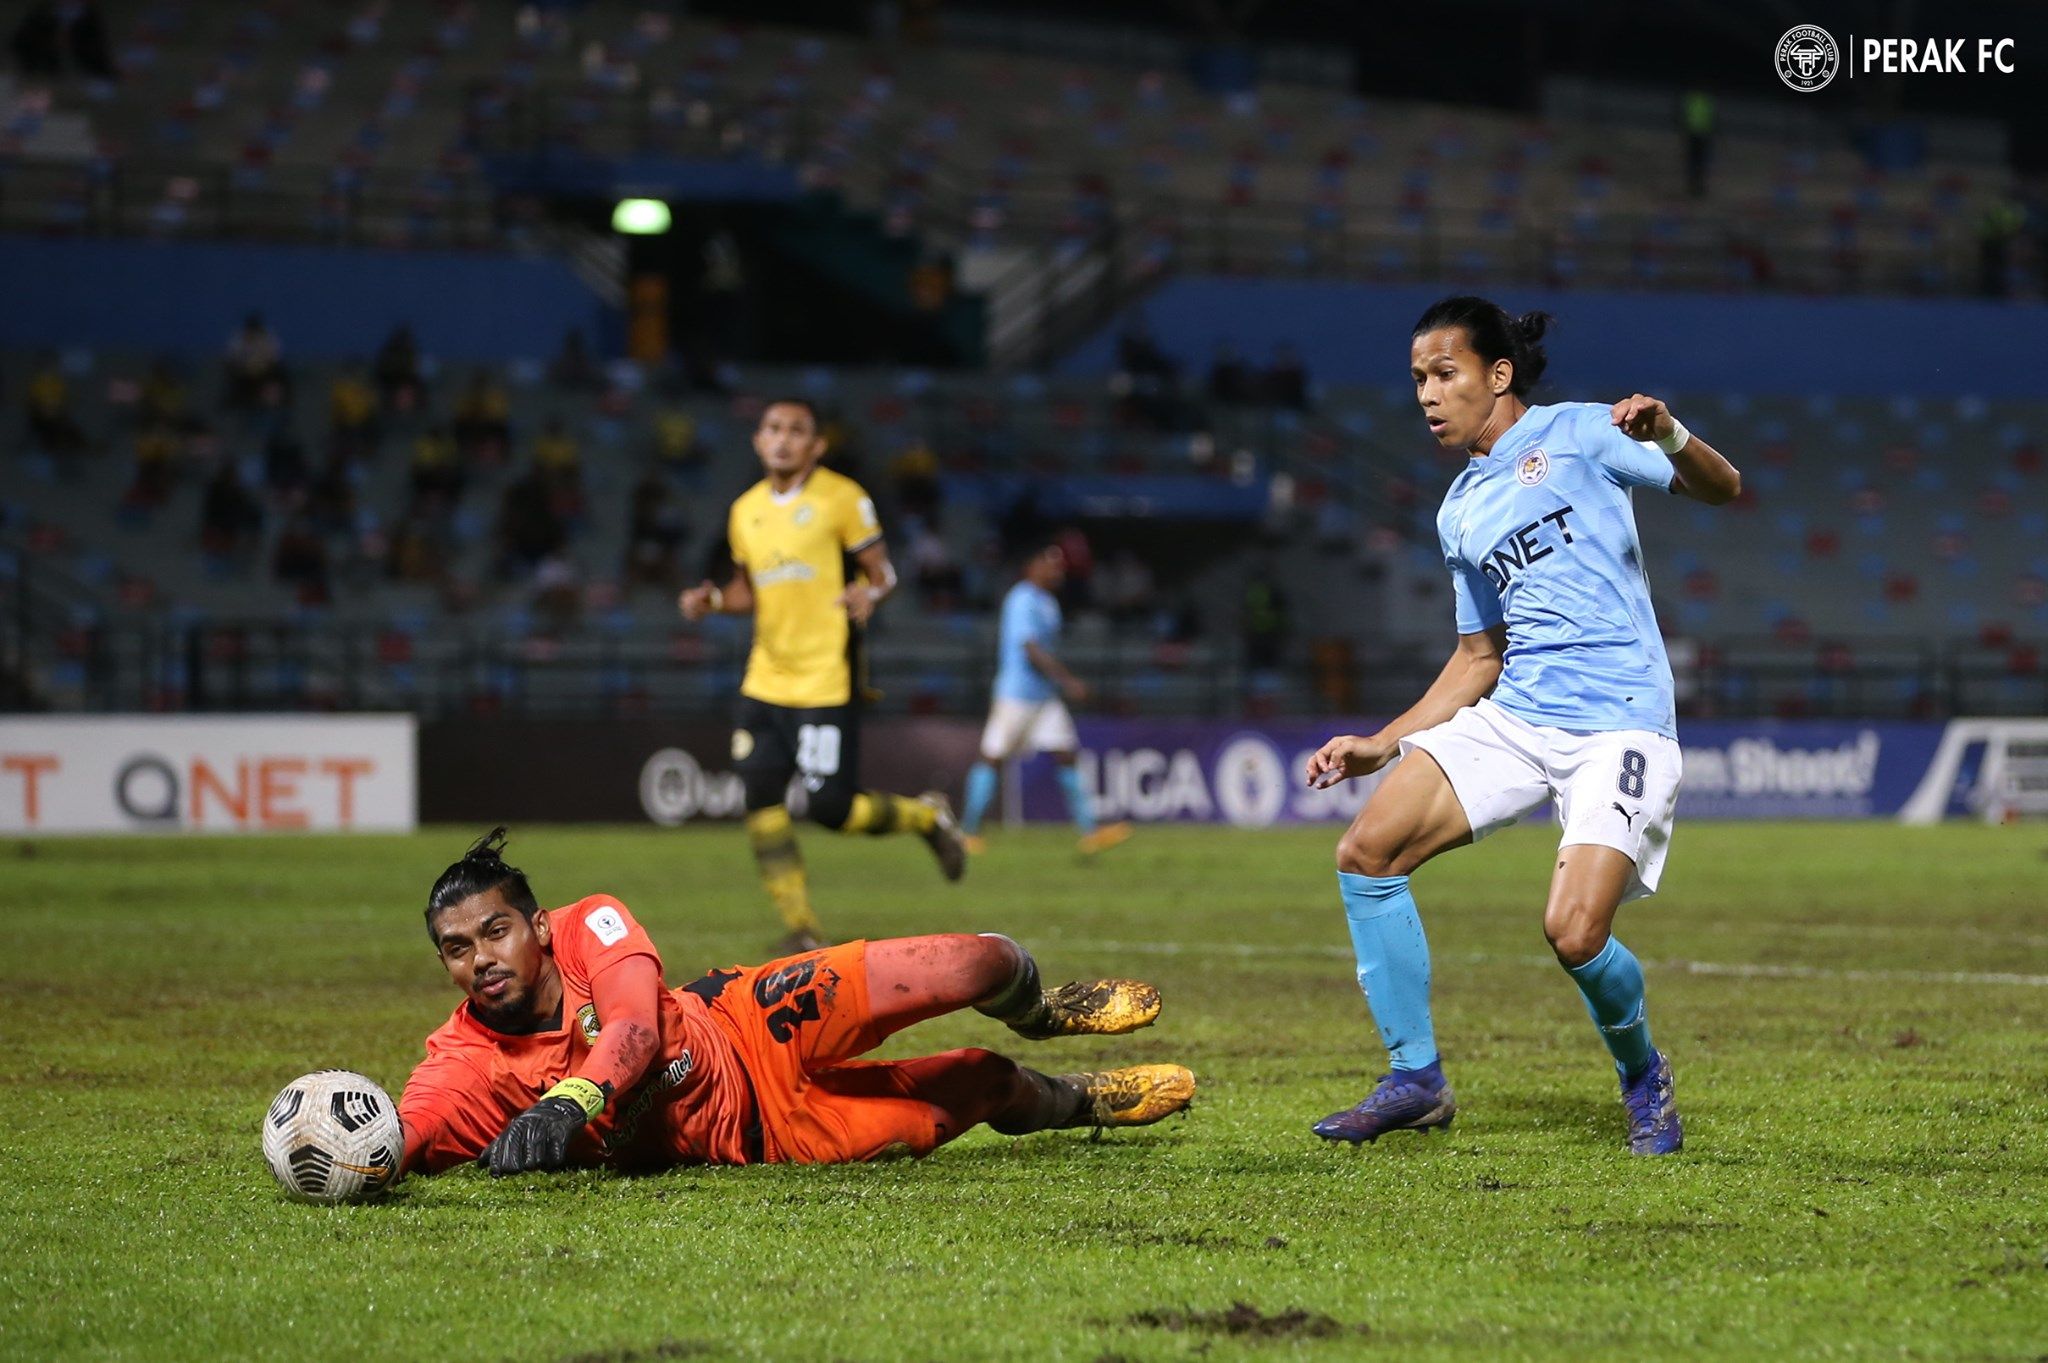 Kiper sekaligus wakil kapten Perak FC, Hafizul Hakim mengamankan bola sontekan dari pemain Petaling Jaya City FC, Khairil Anuar dalam laga Liga Super Malaysia 2021, 5 Mei 2021.